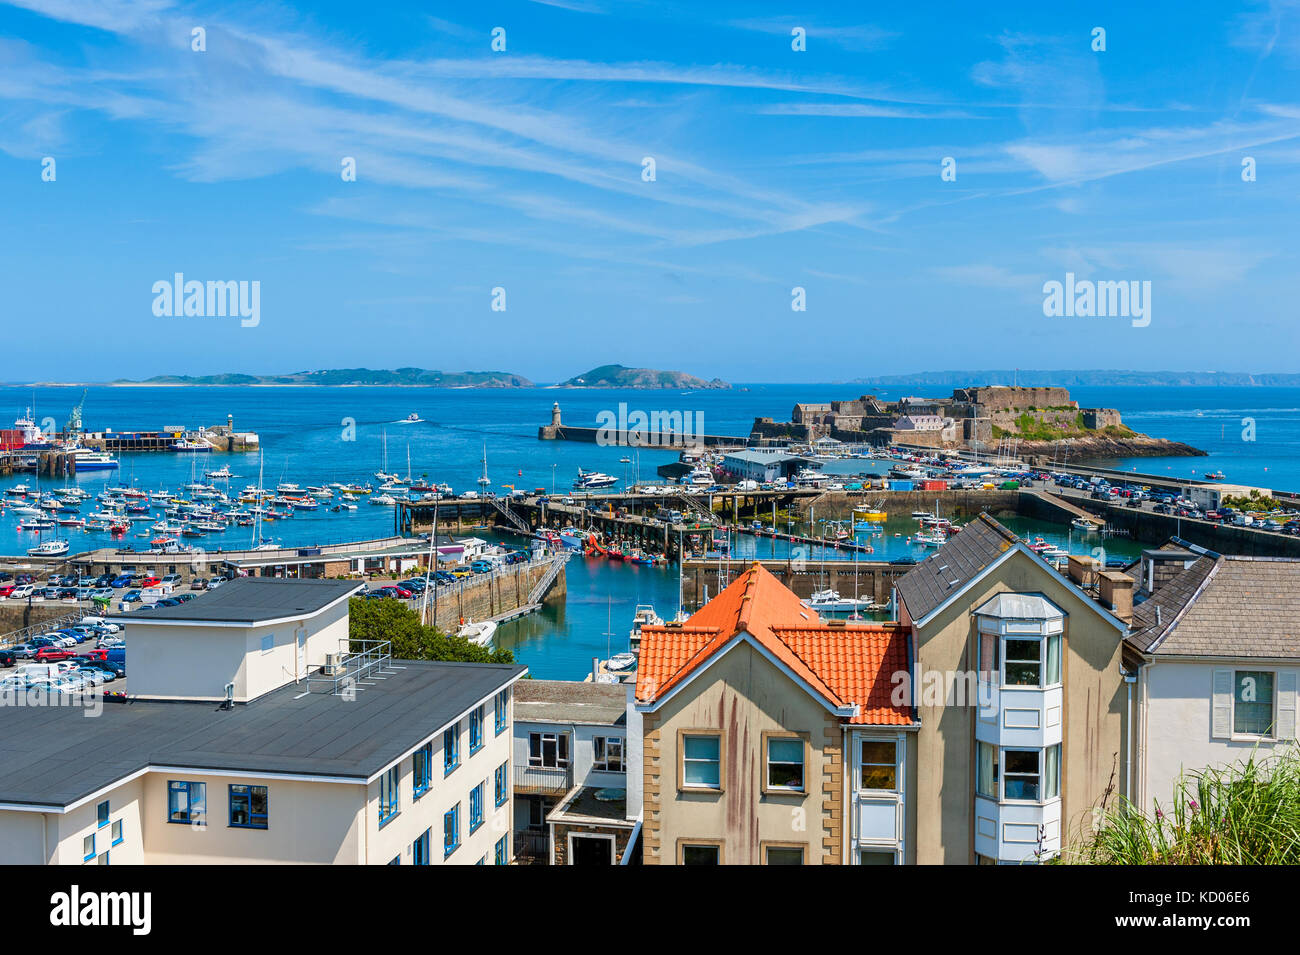 Hohen winkel Blick über den Hafen von St. Peter Port, Guernsey, Channel Islands, Großbritannien. Die Inseln Herm und Sark sind in der Ferne zu sehen. Stockfoto